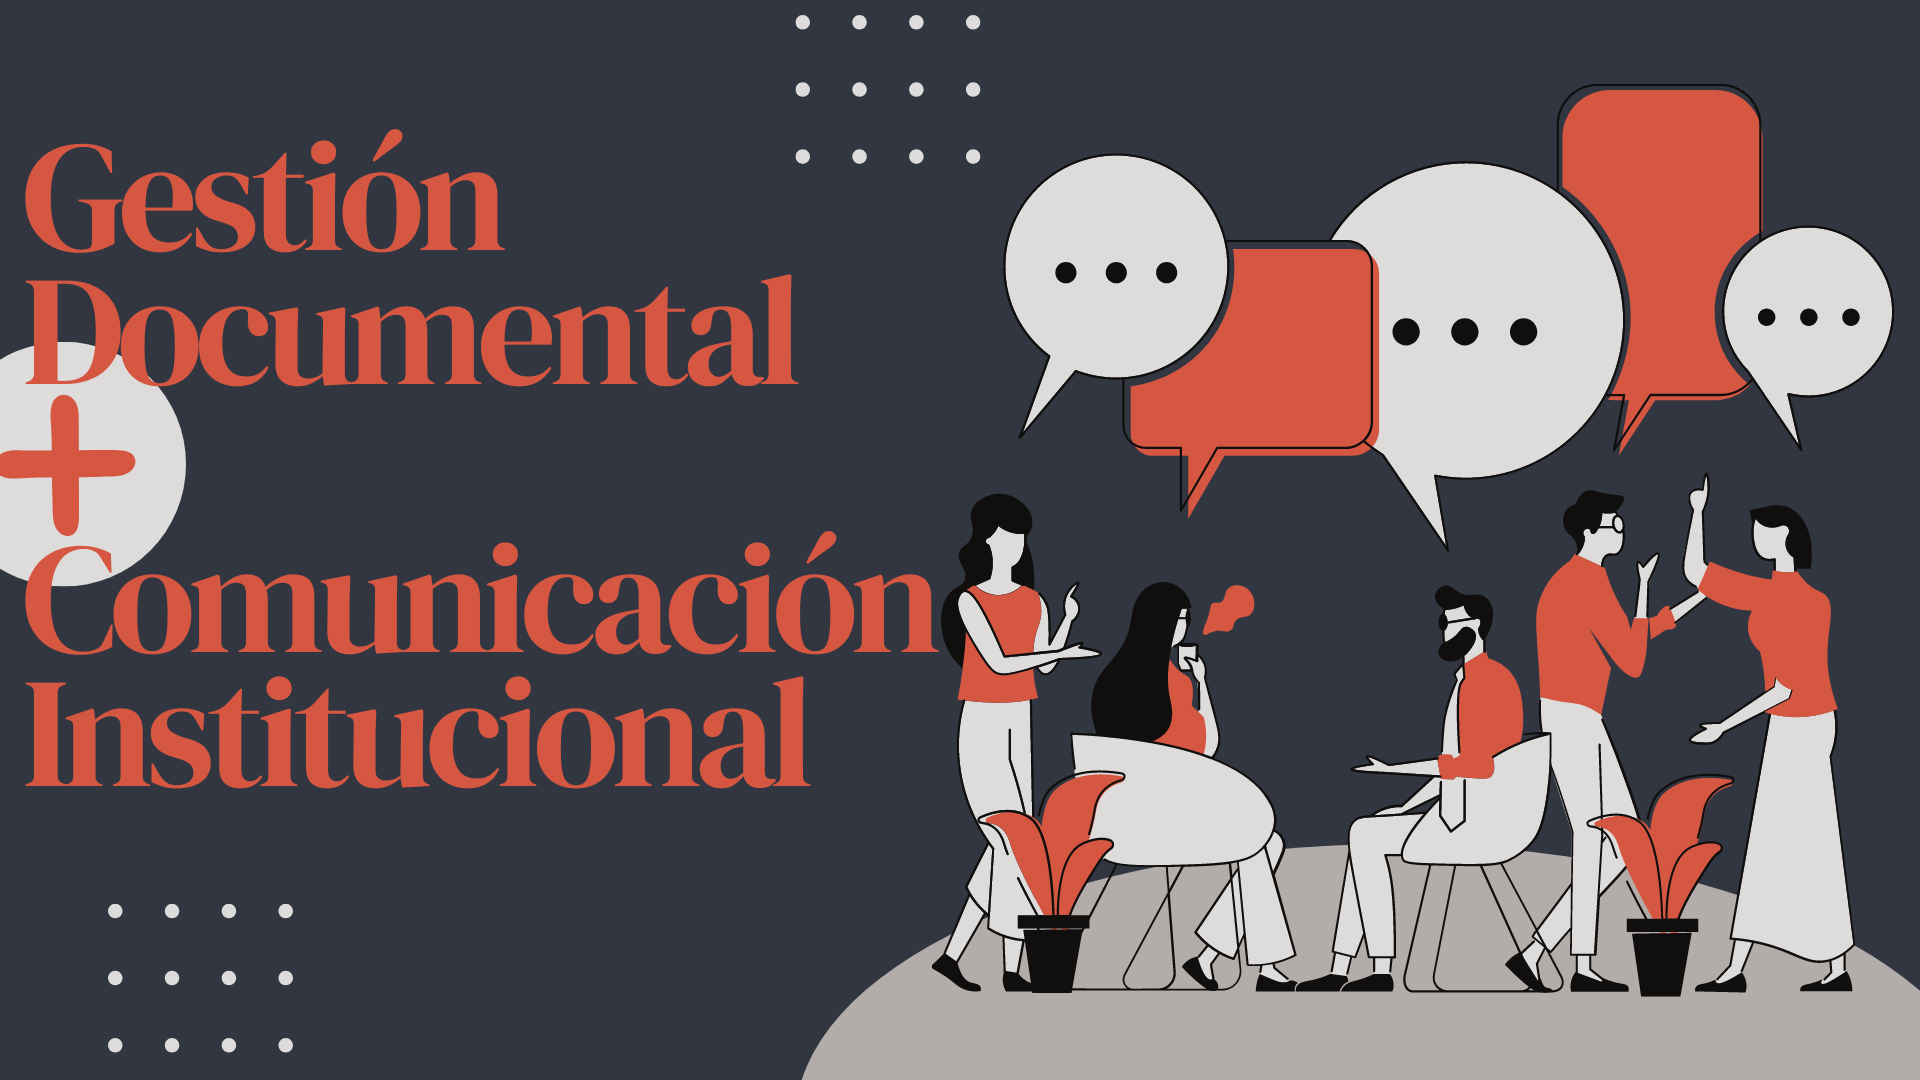 Gestión Documental + Comunicación Institucional